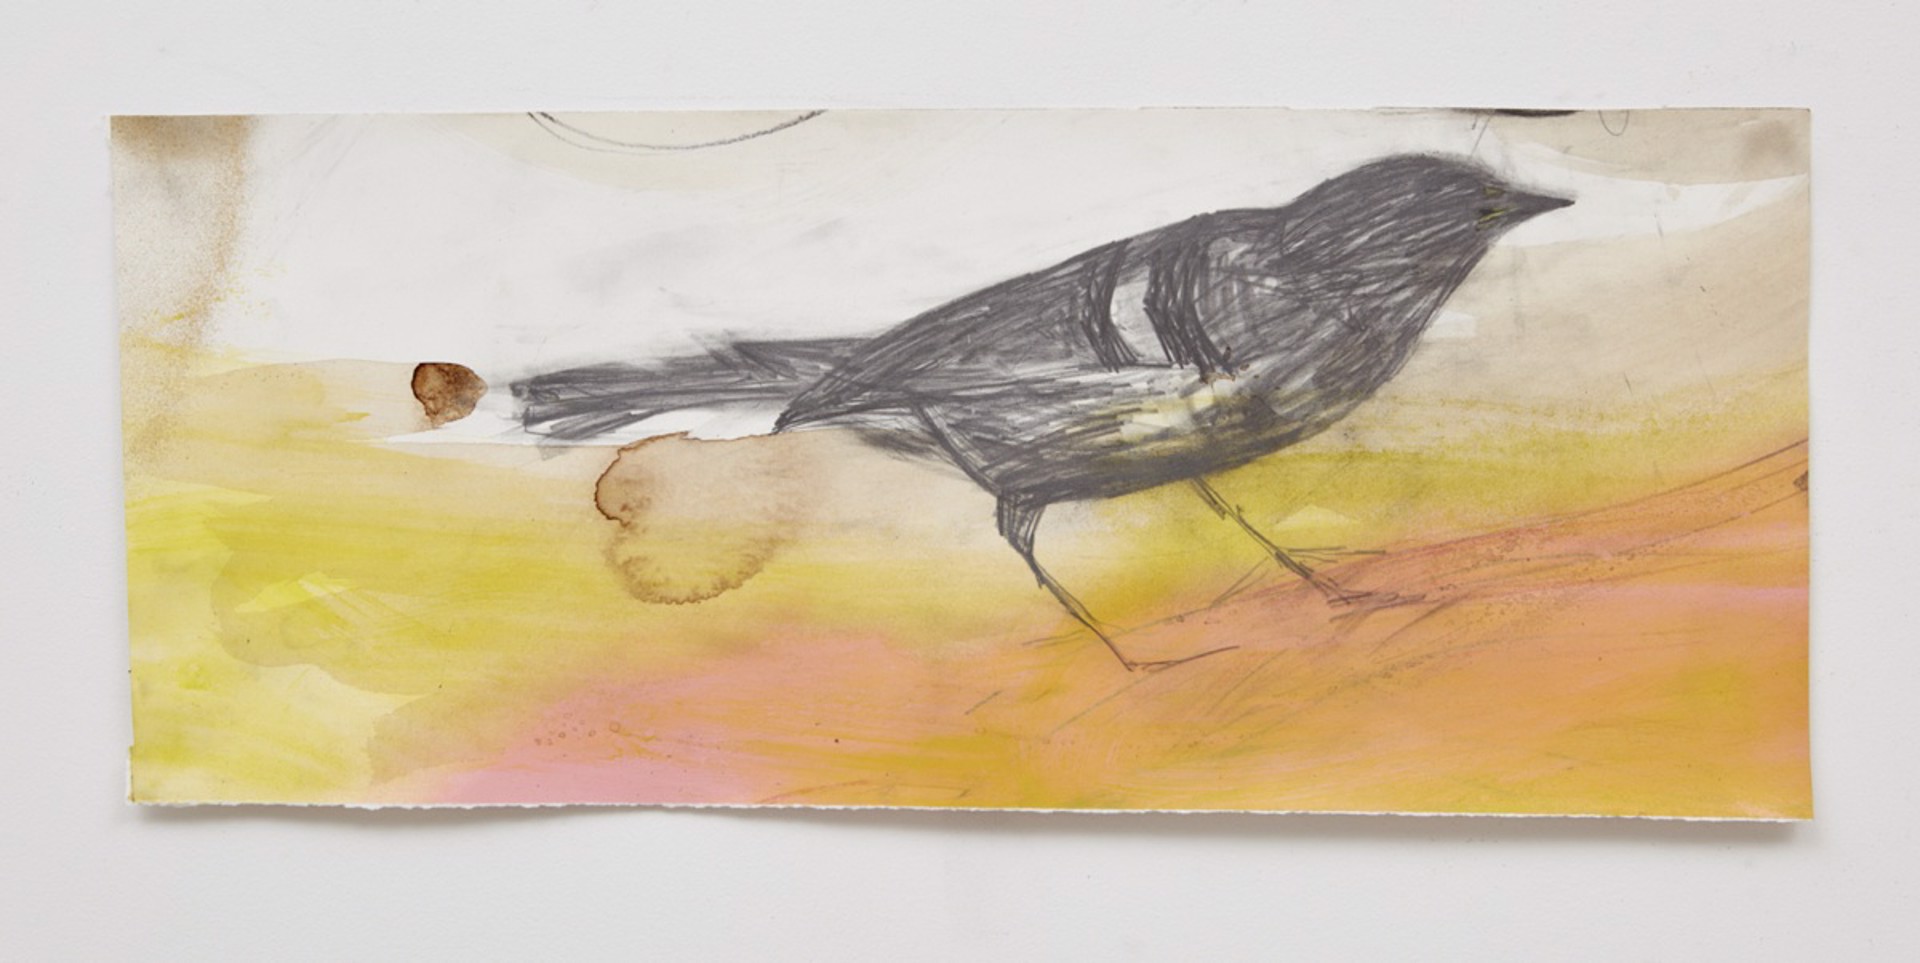 Black Bird on Pink Sand by Jeannie Weissglass